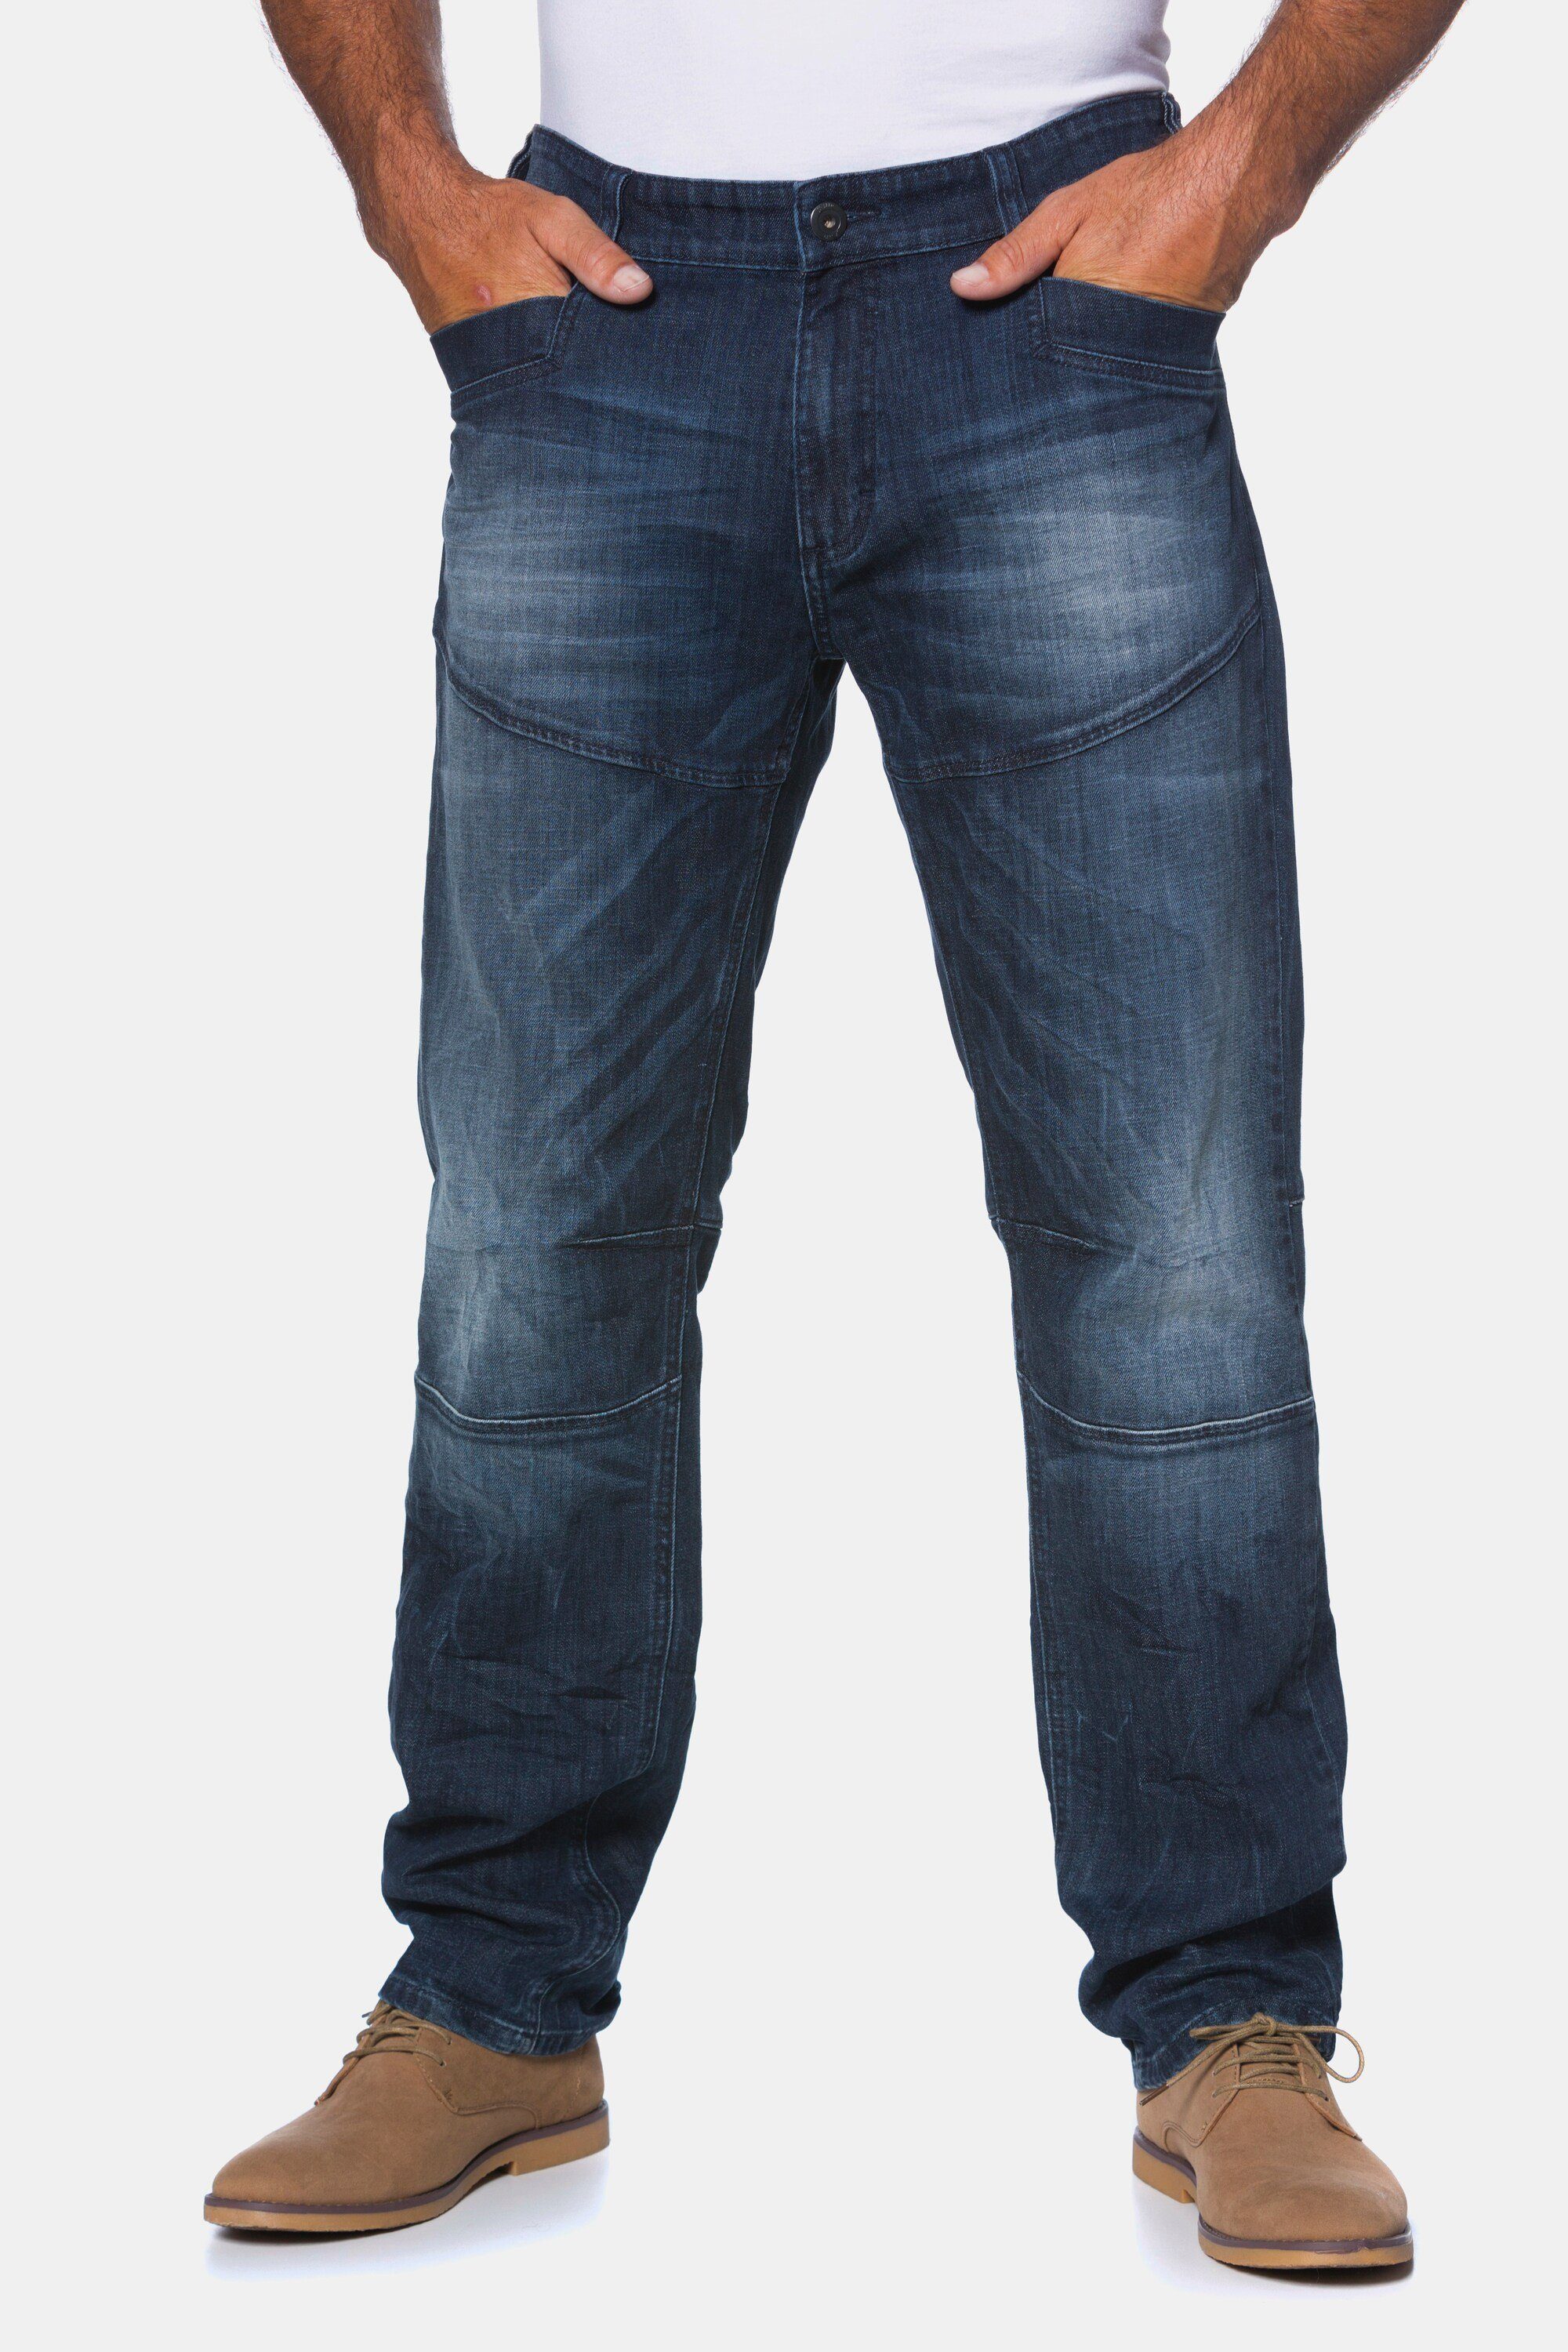 JP1880 5-Pocket-Jeans JP 1880 Herren große Größen Bis 66 Jeans